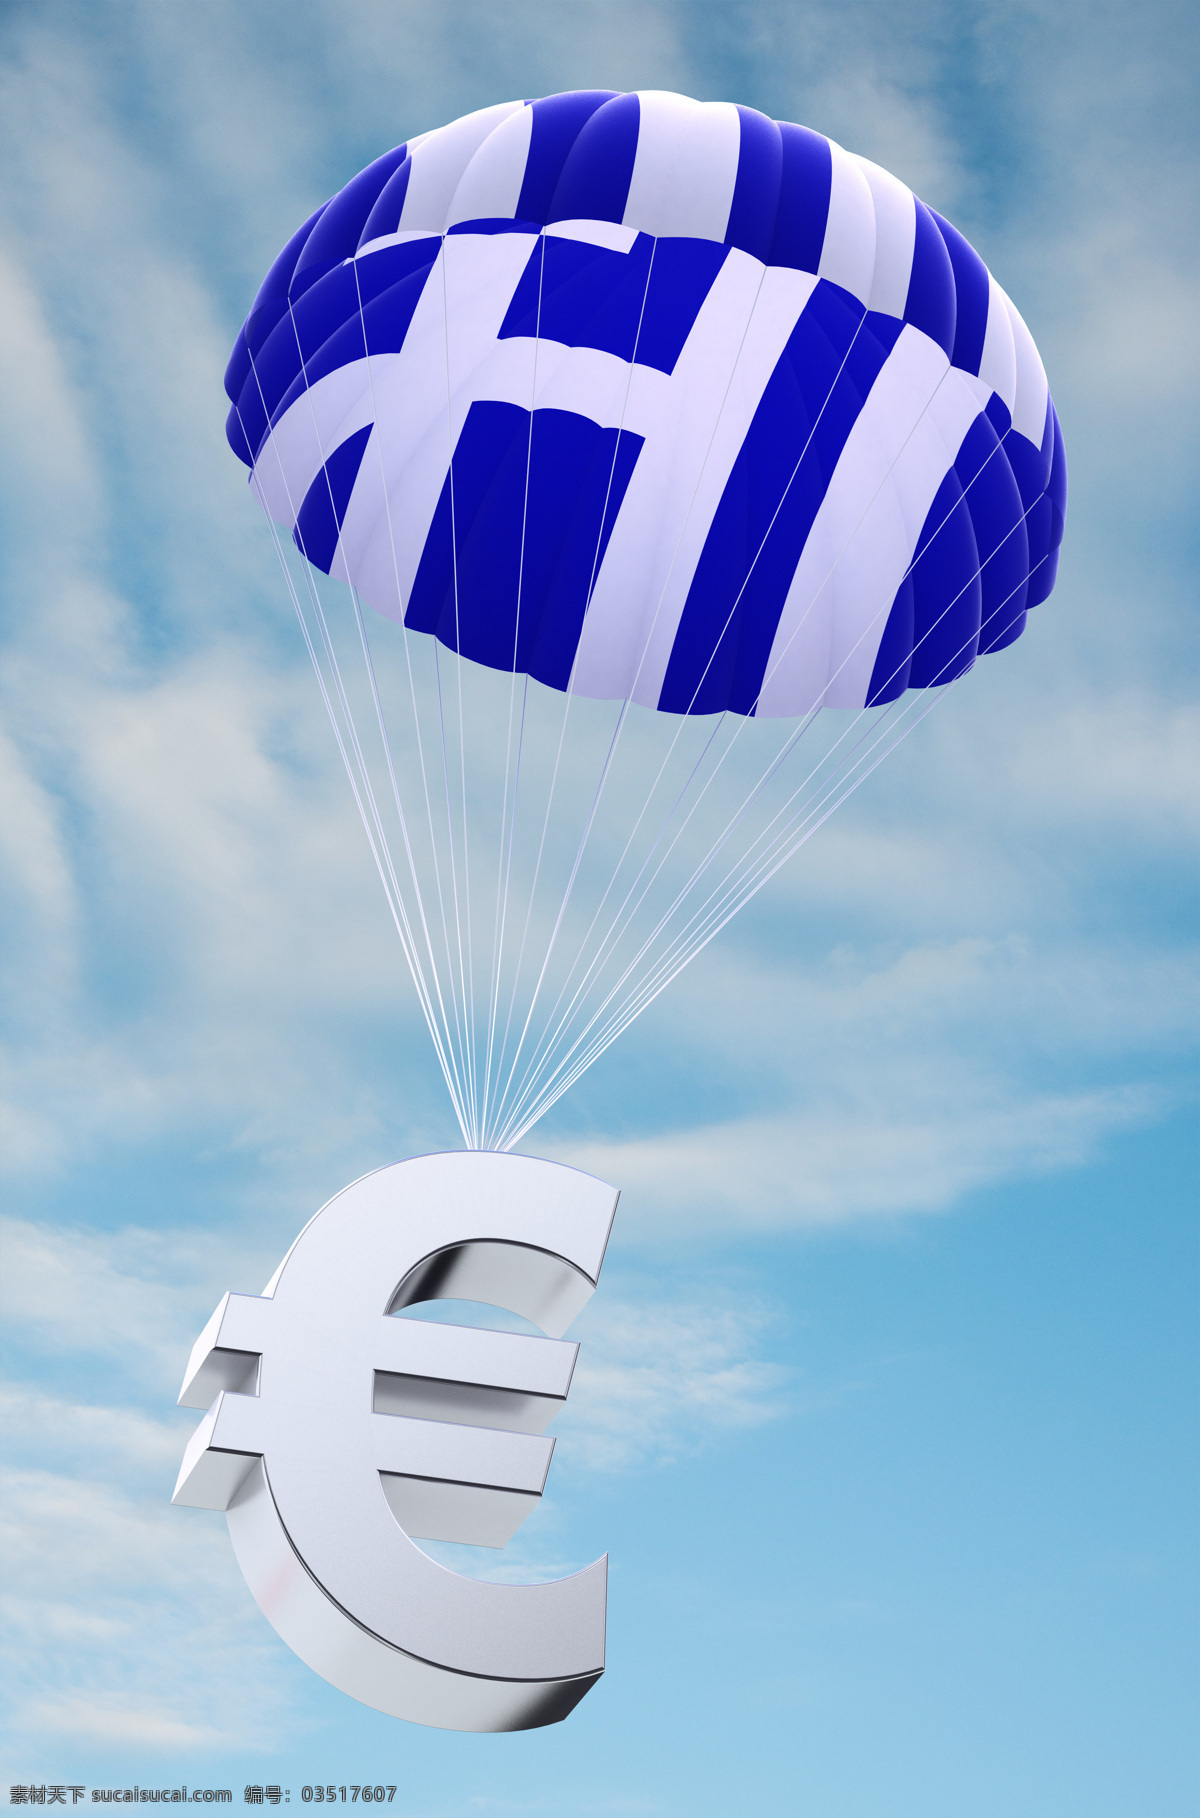 希腊 国旗 降落伞 希腊国旗 欧元货币符号 希腊文化 国旗背景 旗帜 地图图片 生活百科